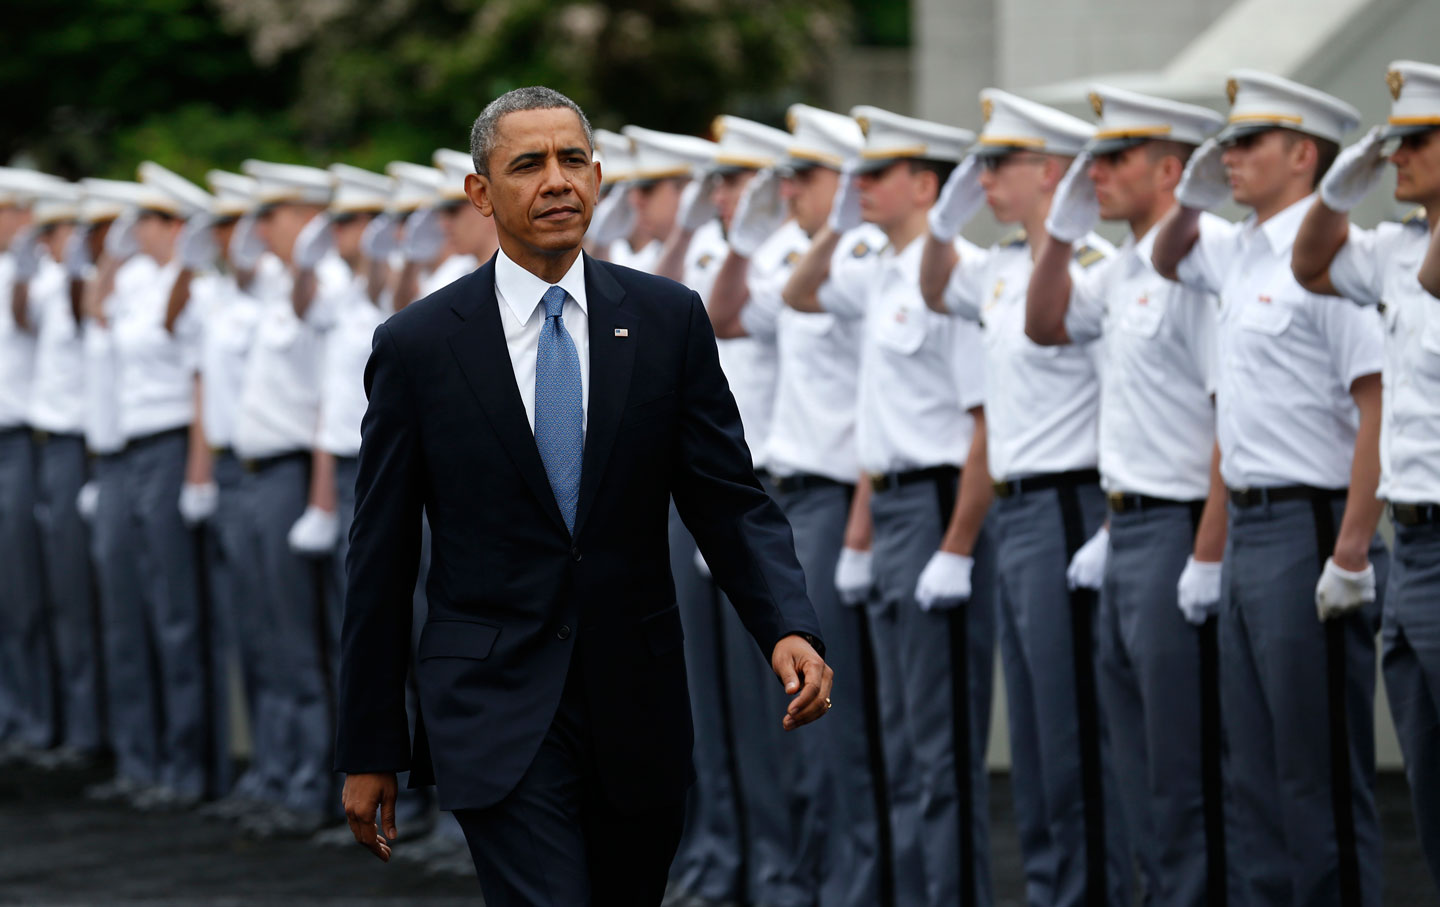 Obama West Point